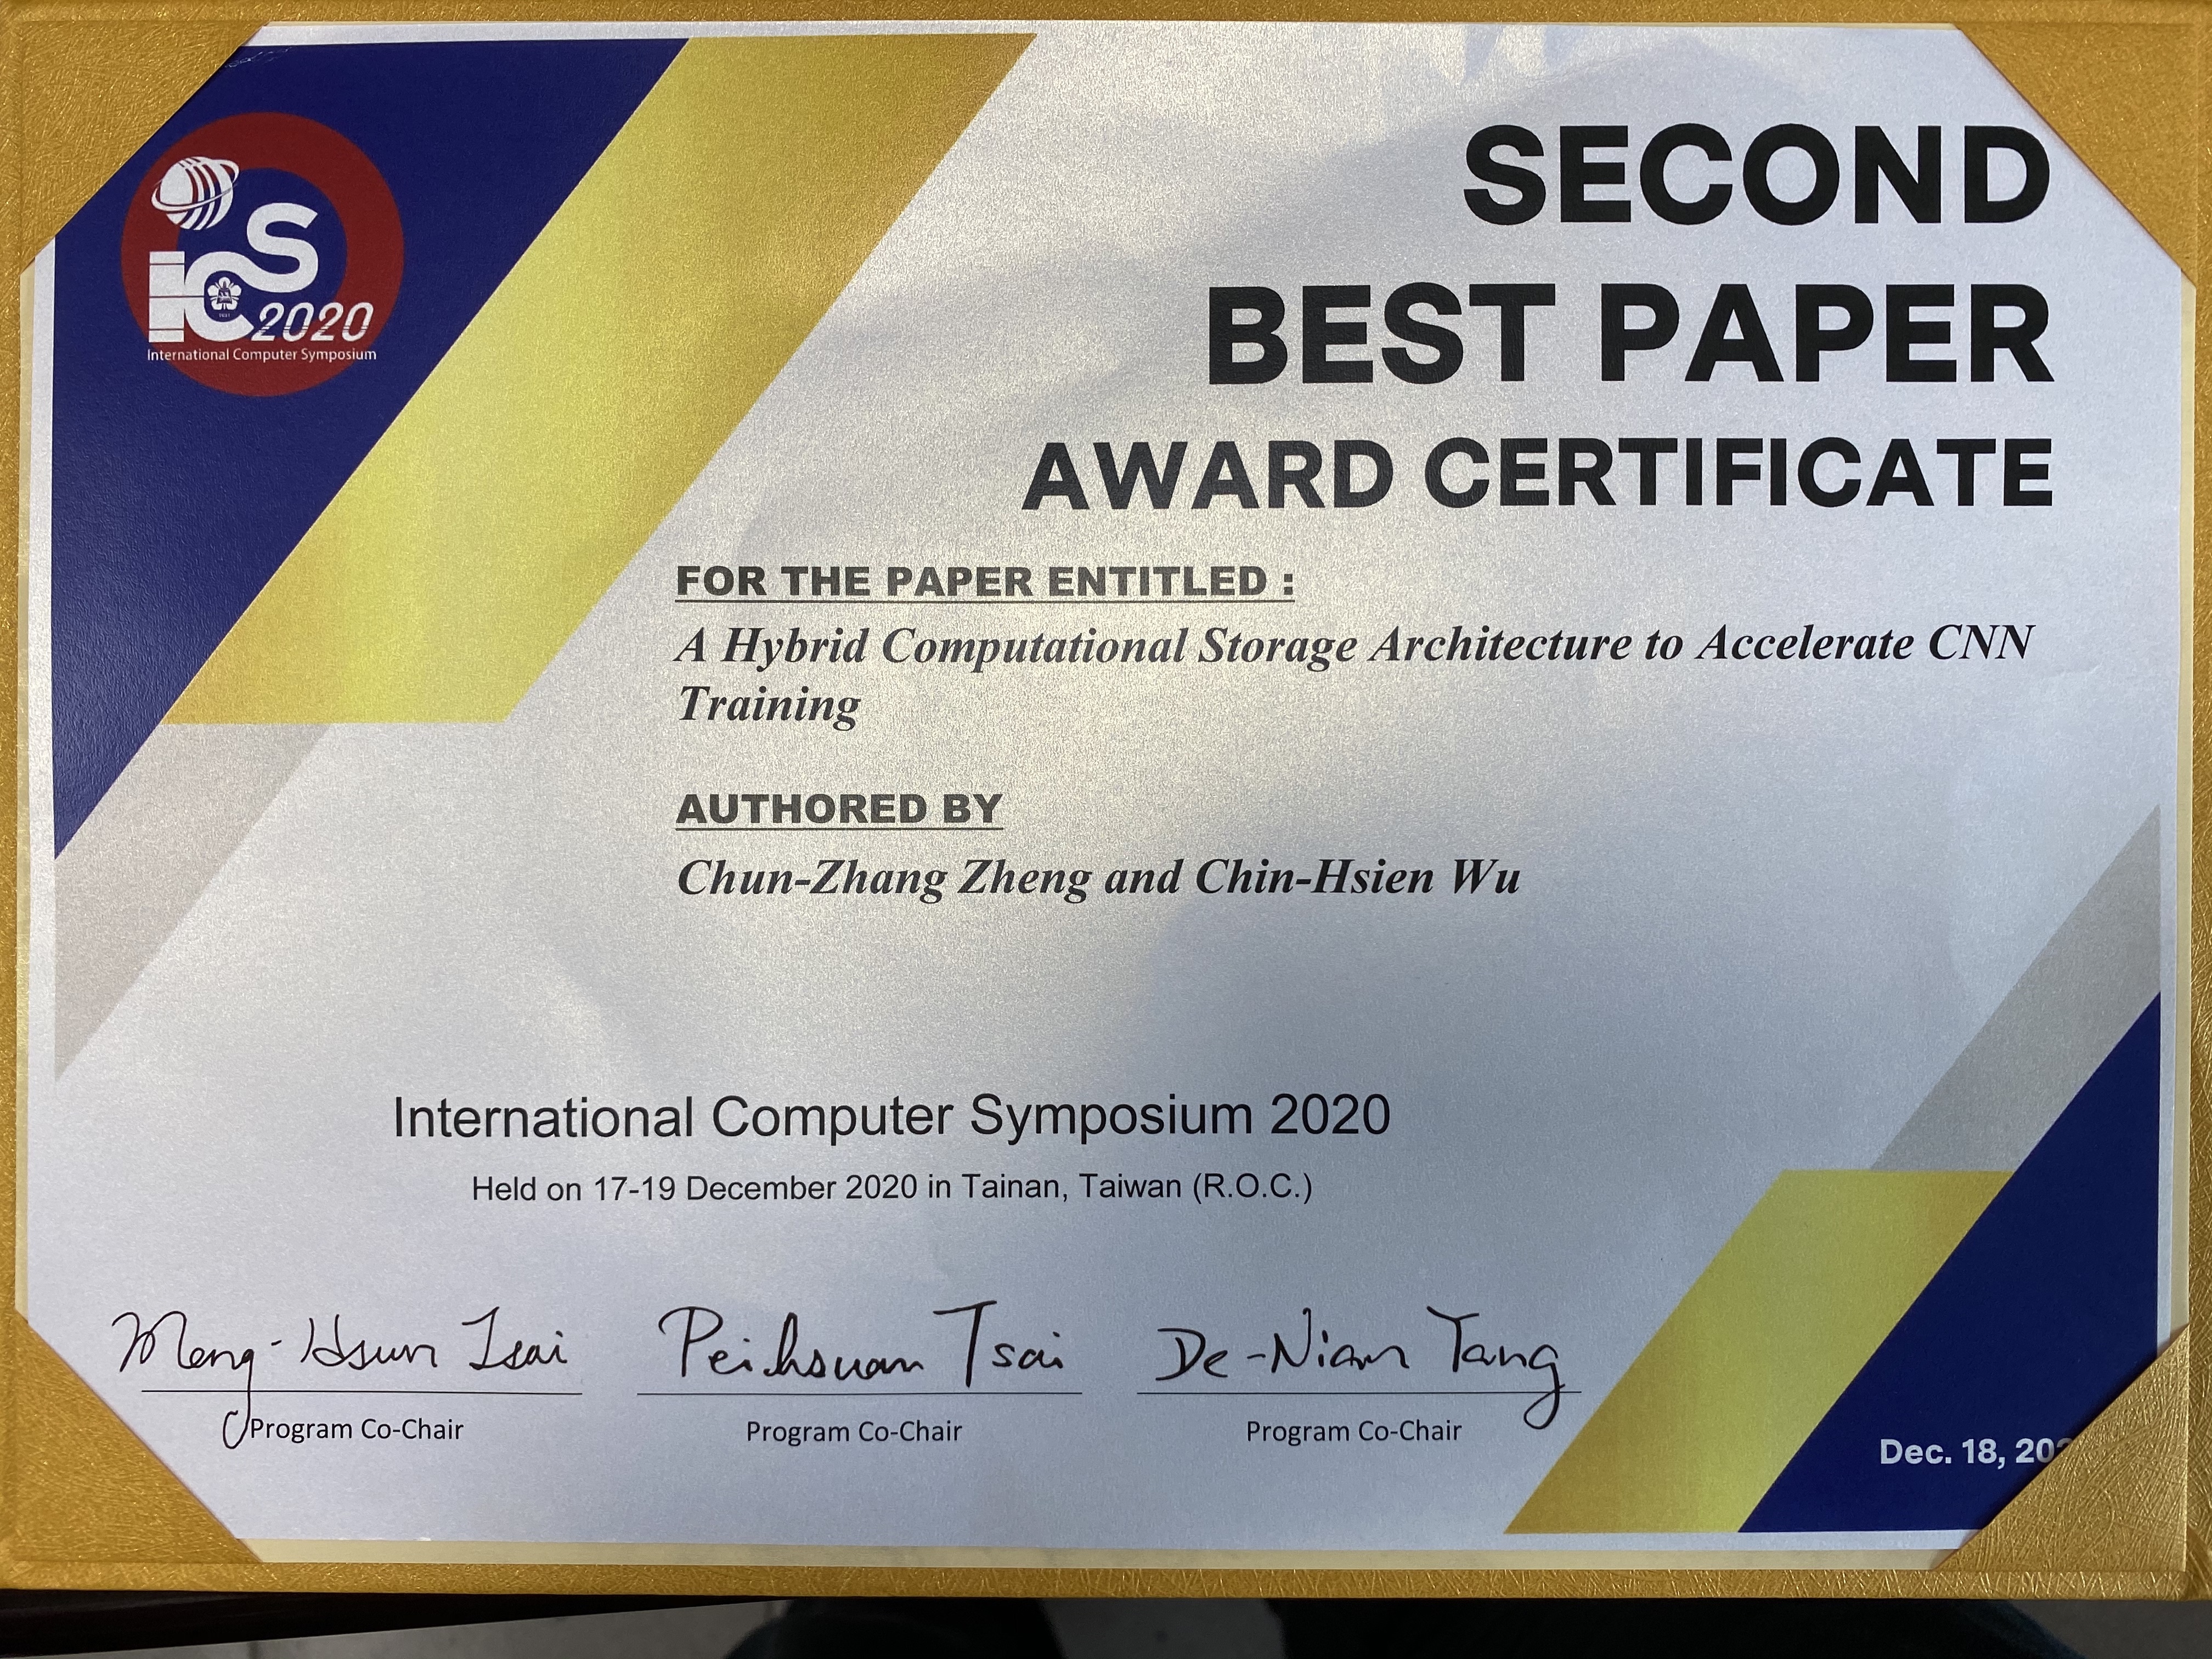 賀！本系吳晋賢老師與鄭春章同學榮獲2020年International Computer Symposium的The Second Best Paper Award。   